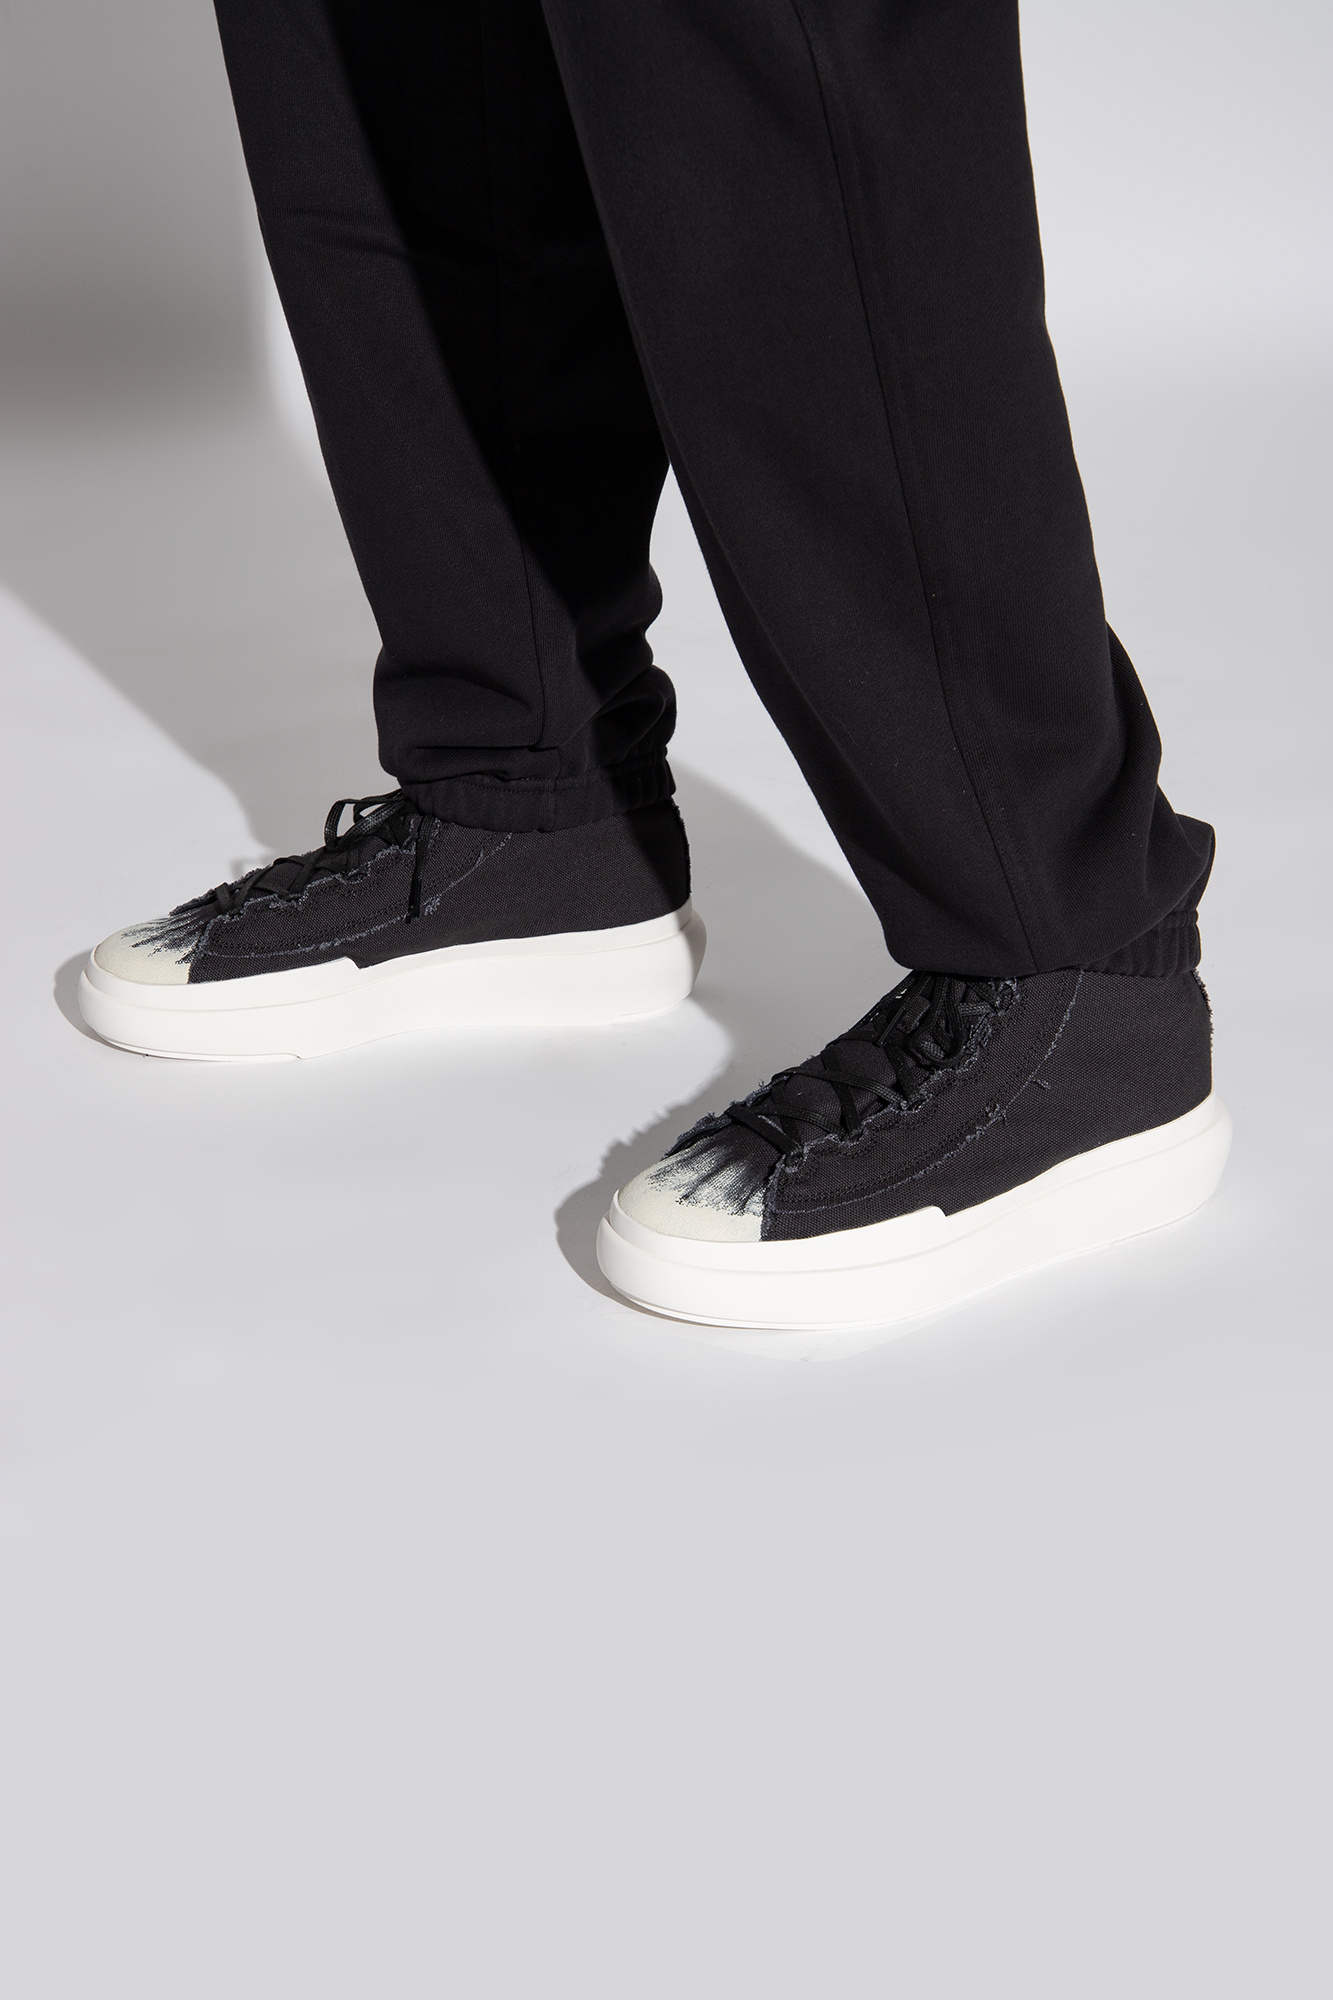 Y-3 Yohji Yamamoto 'Nizza High' high-top sneakers | Men's Shoes